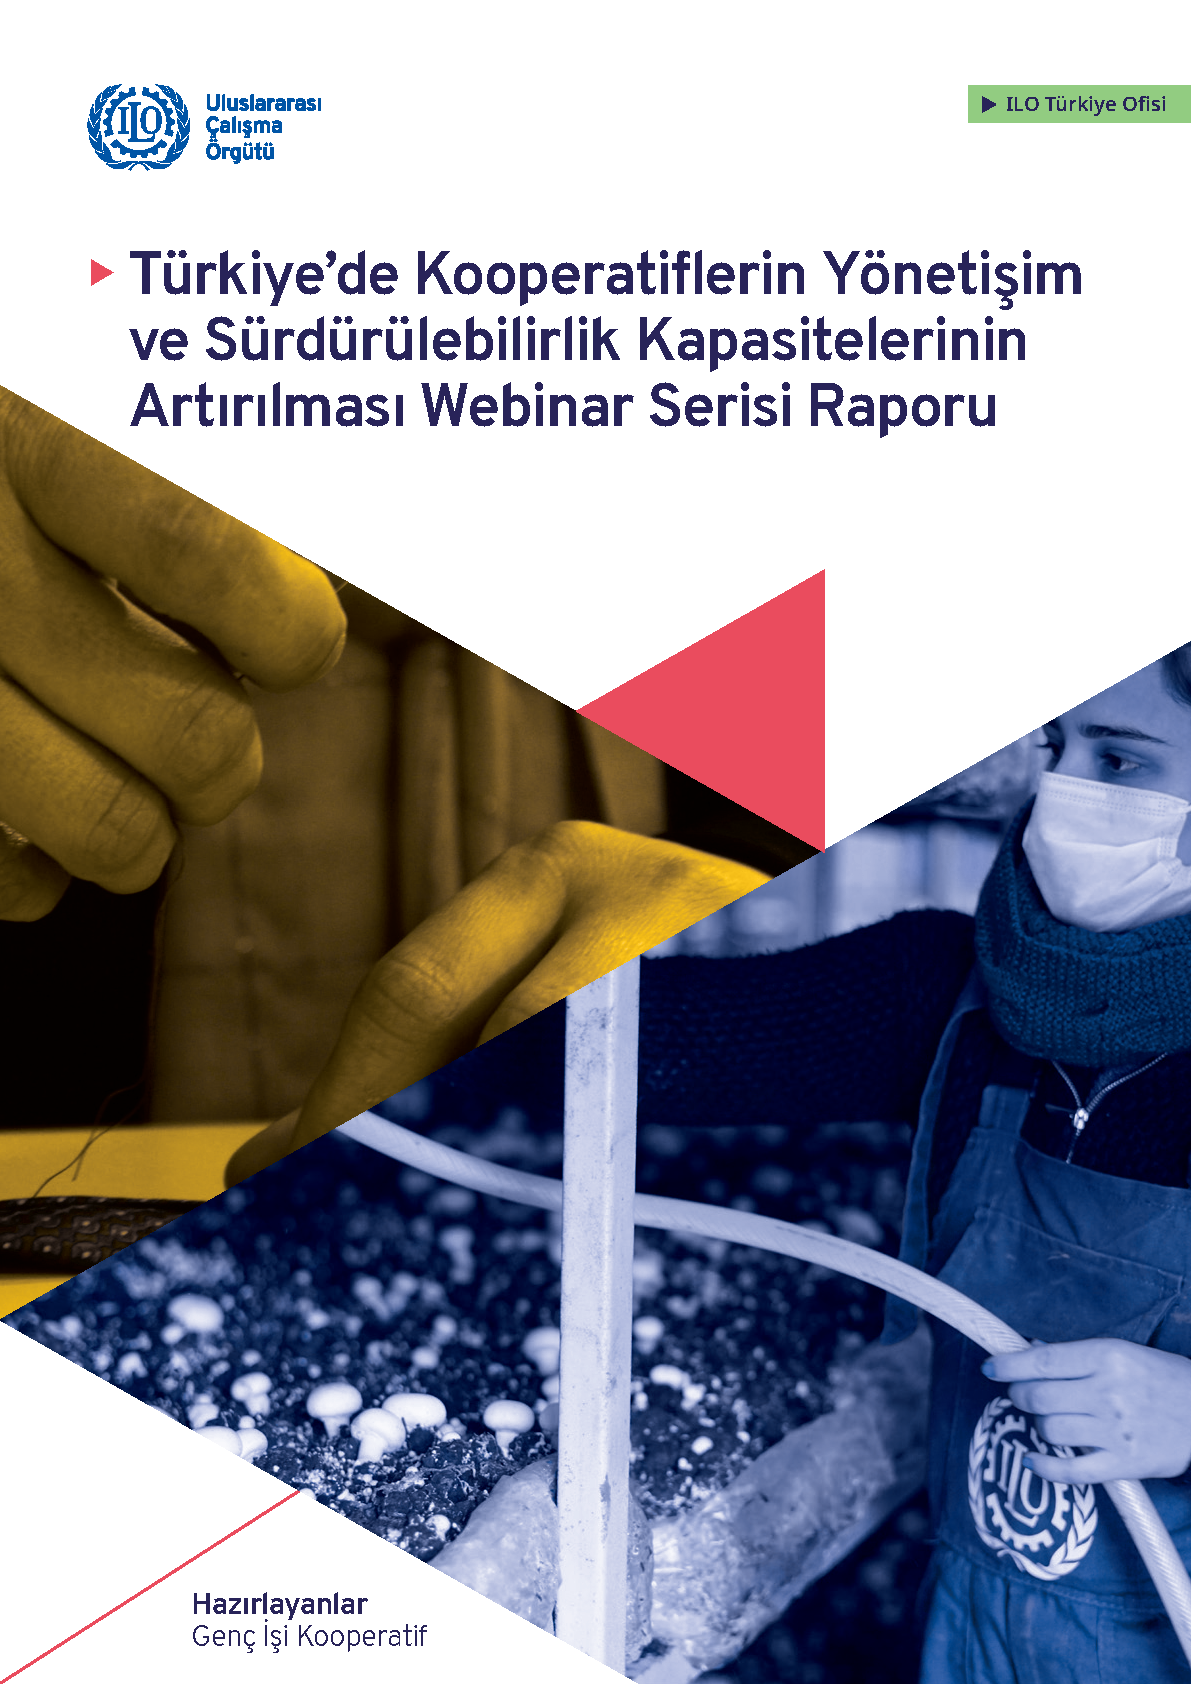 Türkiye’de Kooperatiflerin Yönetişim ve Sürdürülebilirlik Kapasitelerinin Artırılması Webinar Serisi Raporu